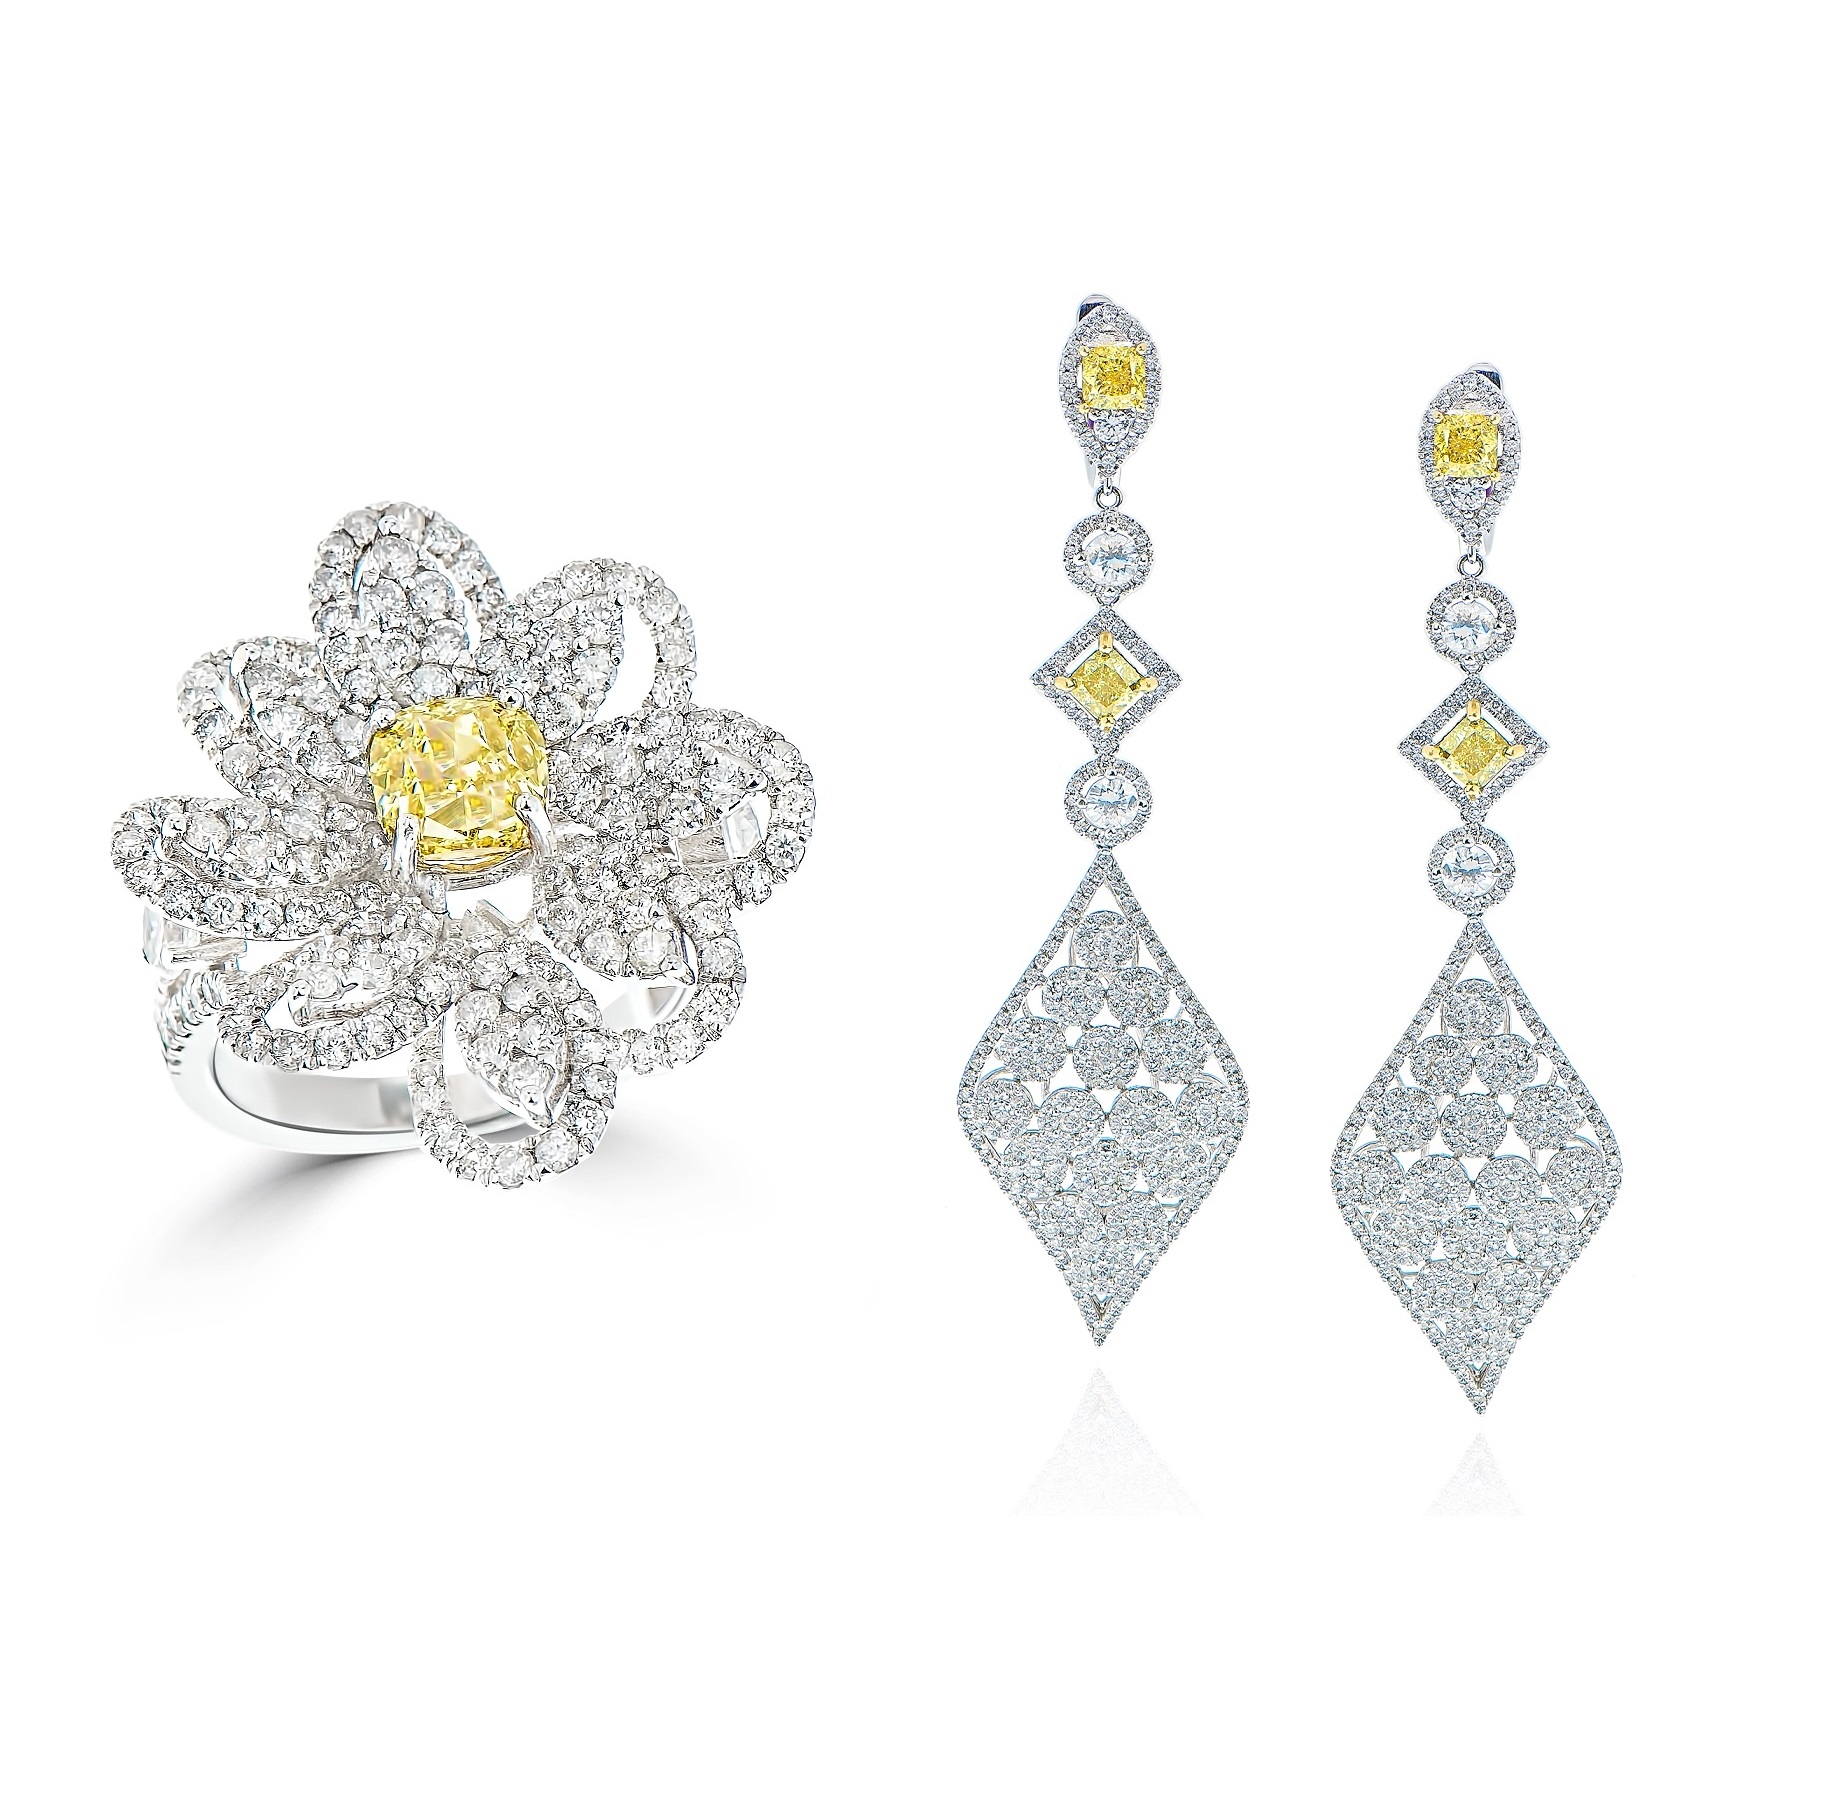 Fancy Yellow Diamond Ring & Earrings Set (12.13ct TW)